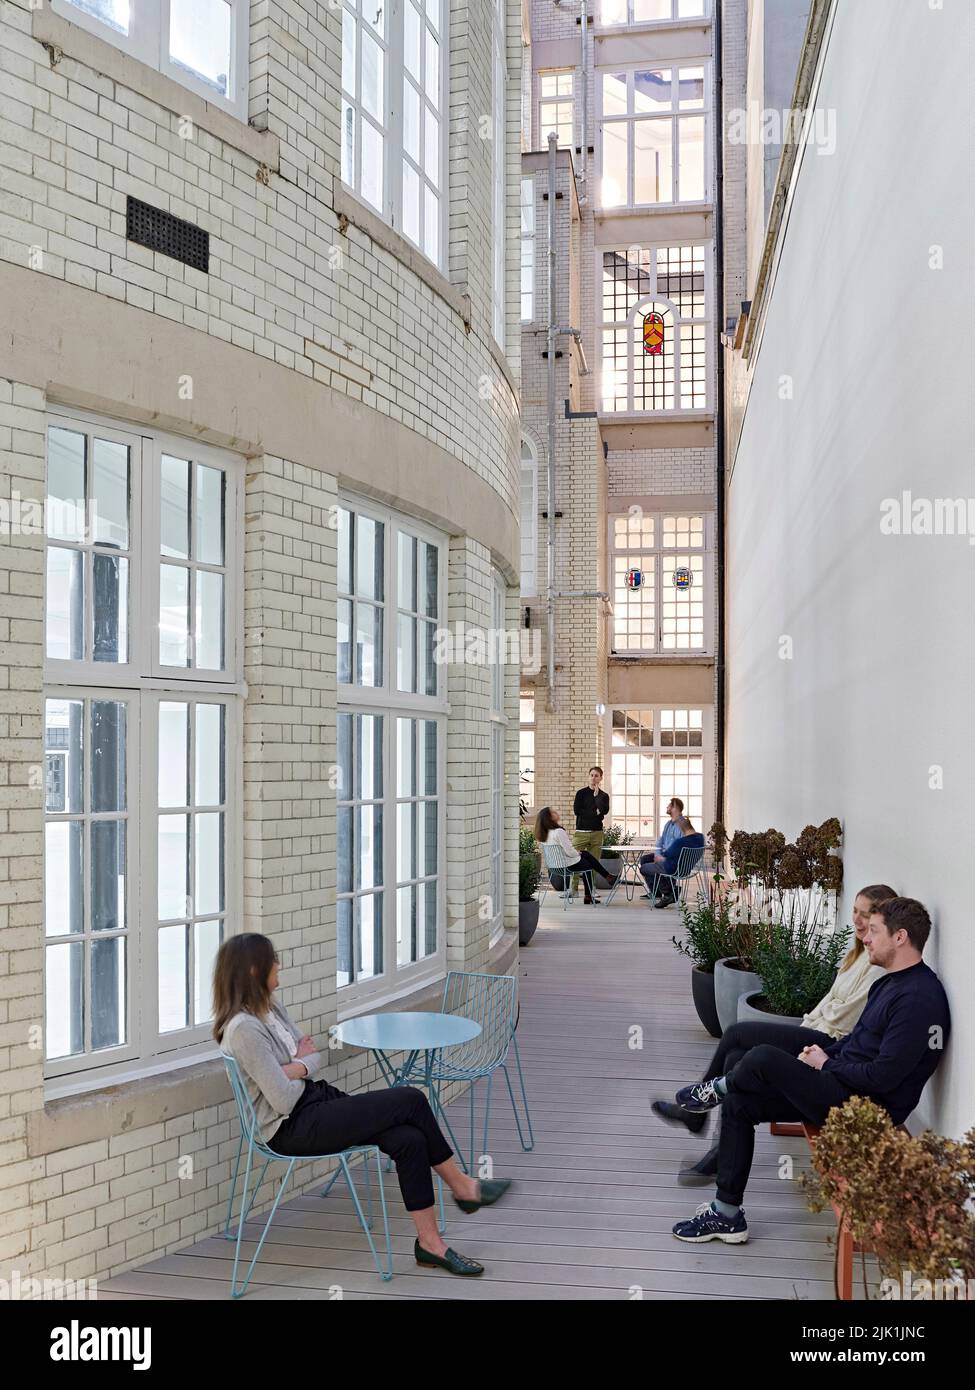 Cour intérieure en plein air avec façade d'origine. The Gilbert & One Lackington, Londres, Royaume-Uni. Architecte: Stiff + Trevillion Architects, 2021 Banque D'Images